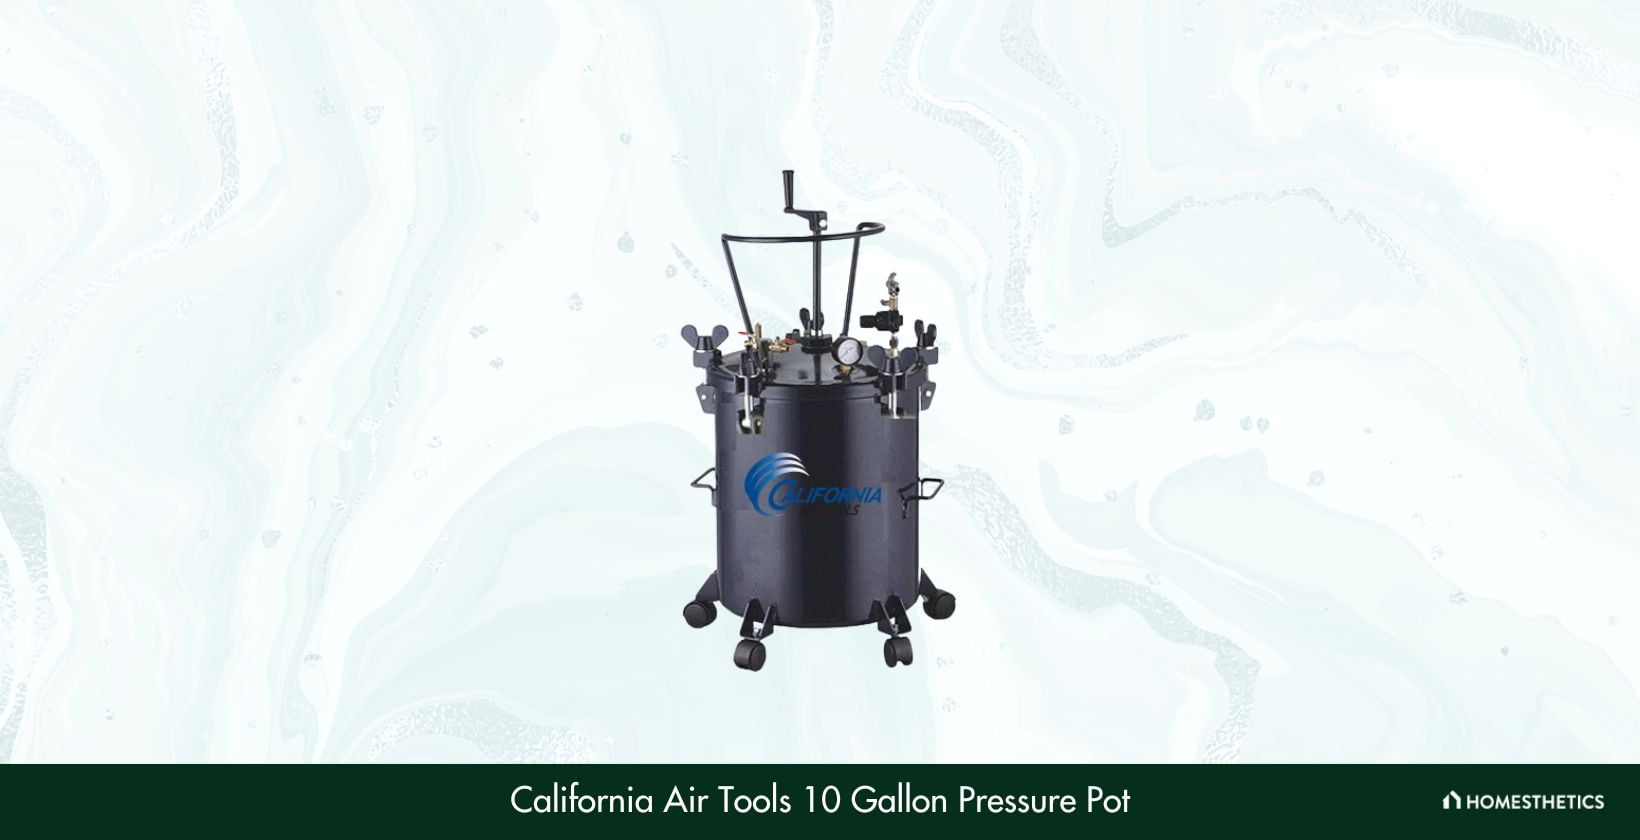 California Air Tools 10 Gallon Pressure Pot